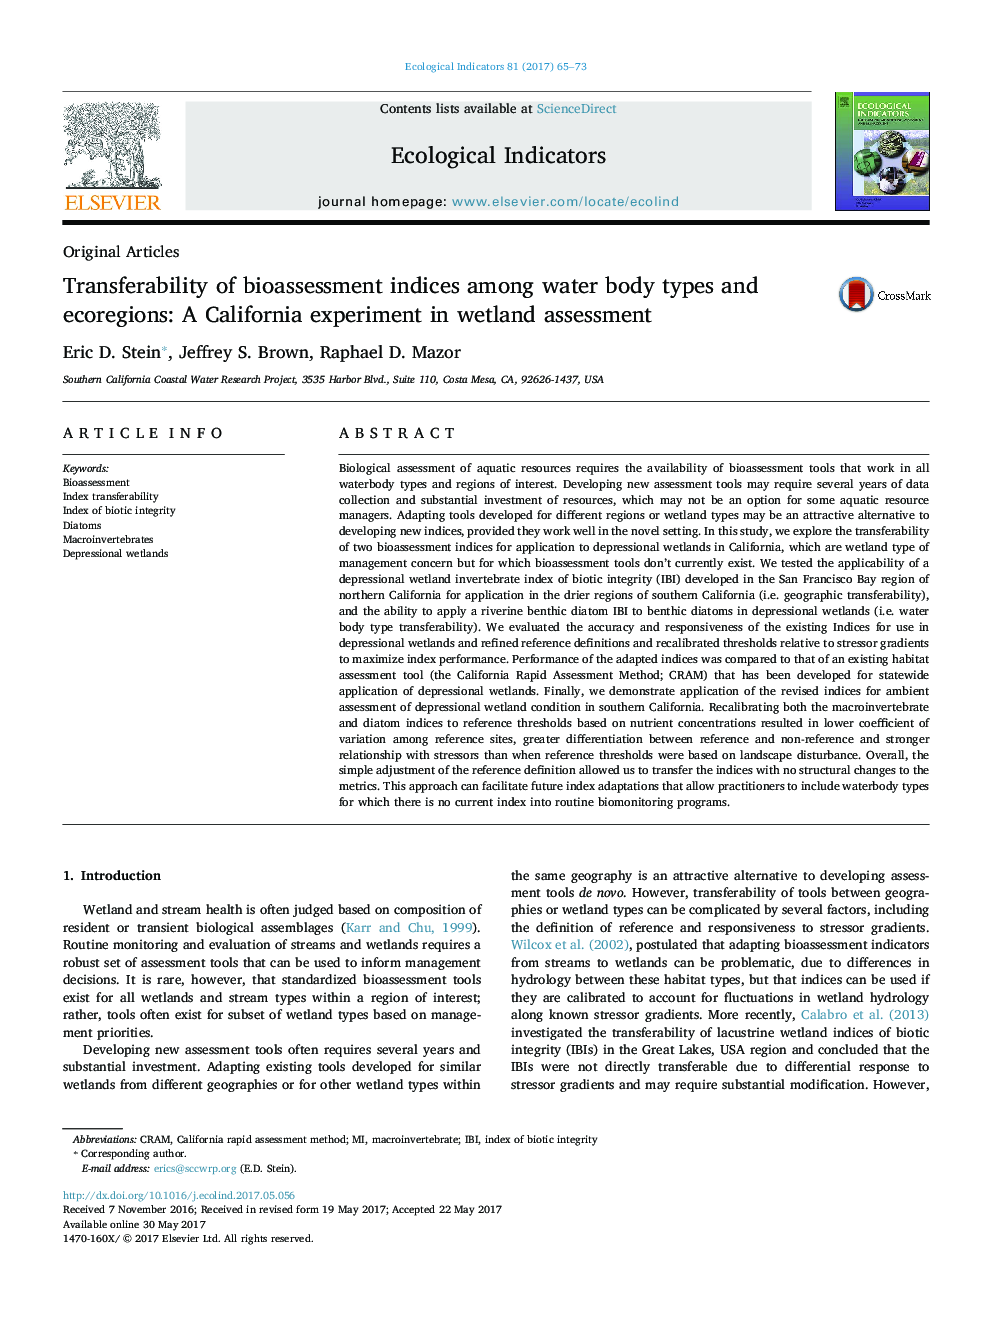 مقالات اصلی انتقال قابلیت های شاخص های زیست سنجی در بین انواع و اقلیم های آب های زیرزمینی: آزمایش کالیفرنیا در ارزیابی تالاب 